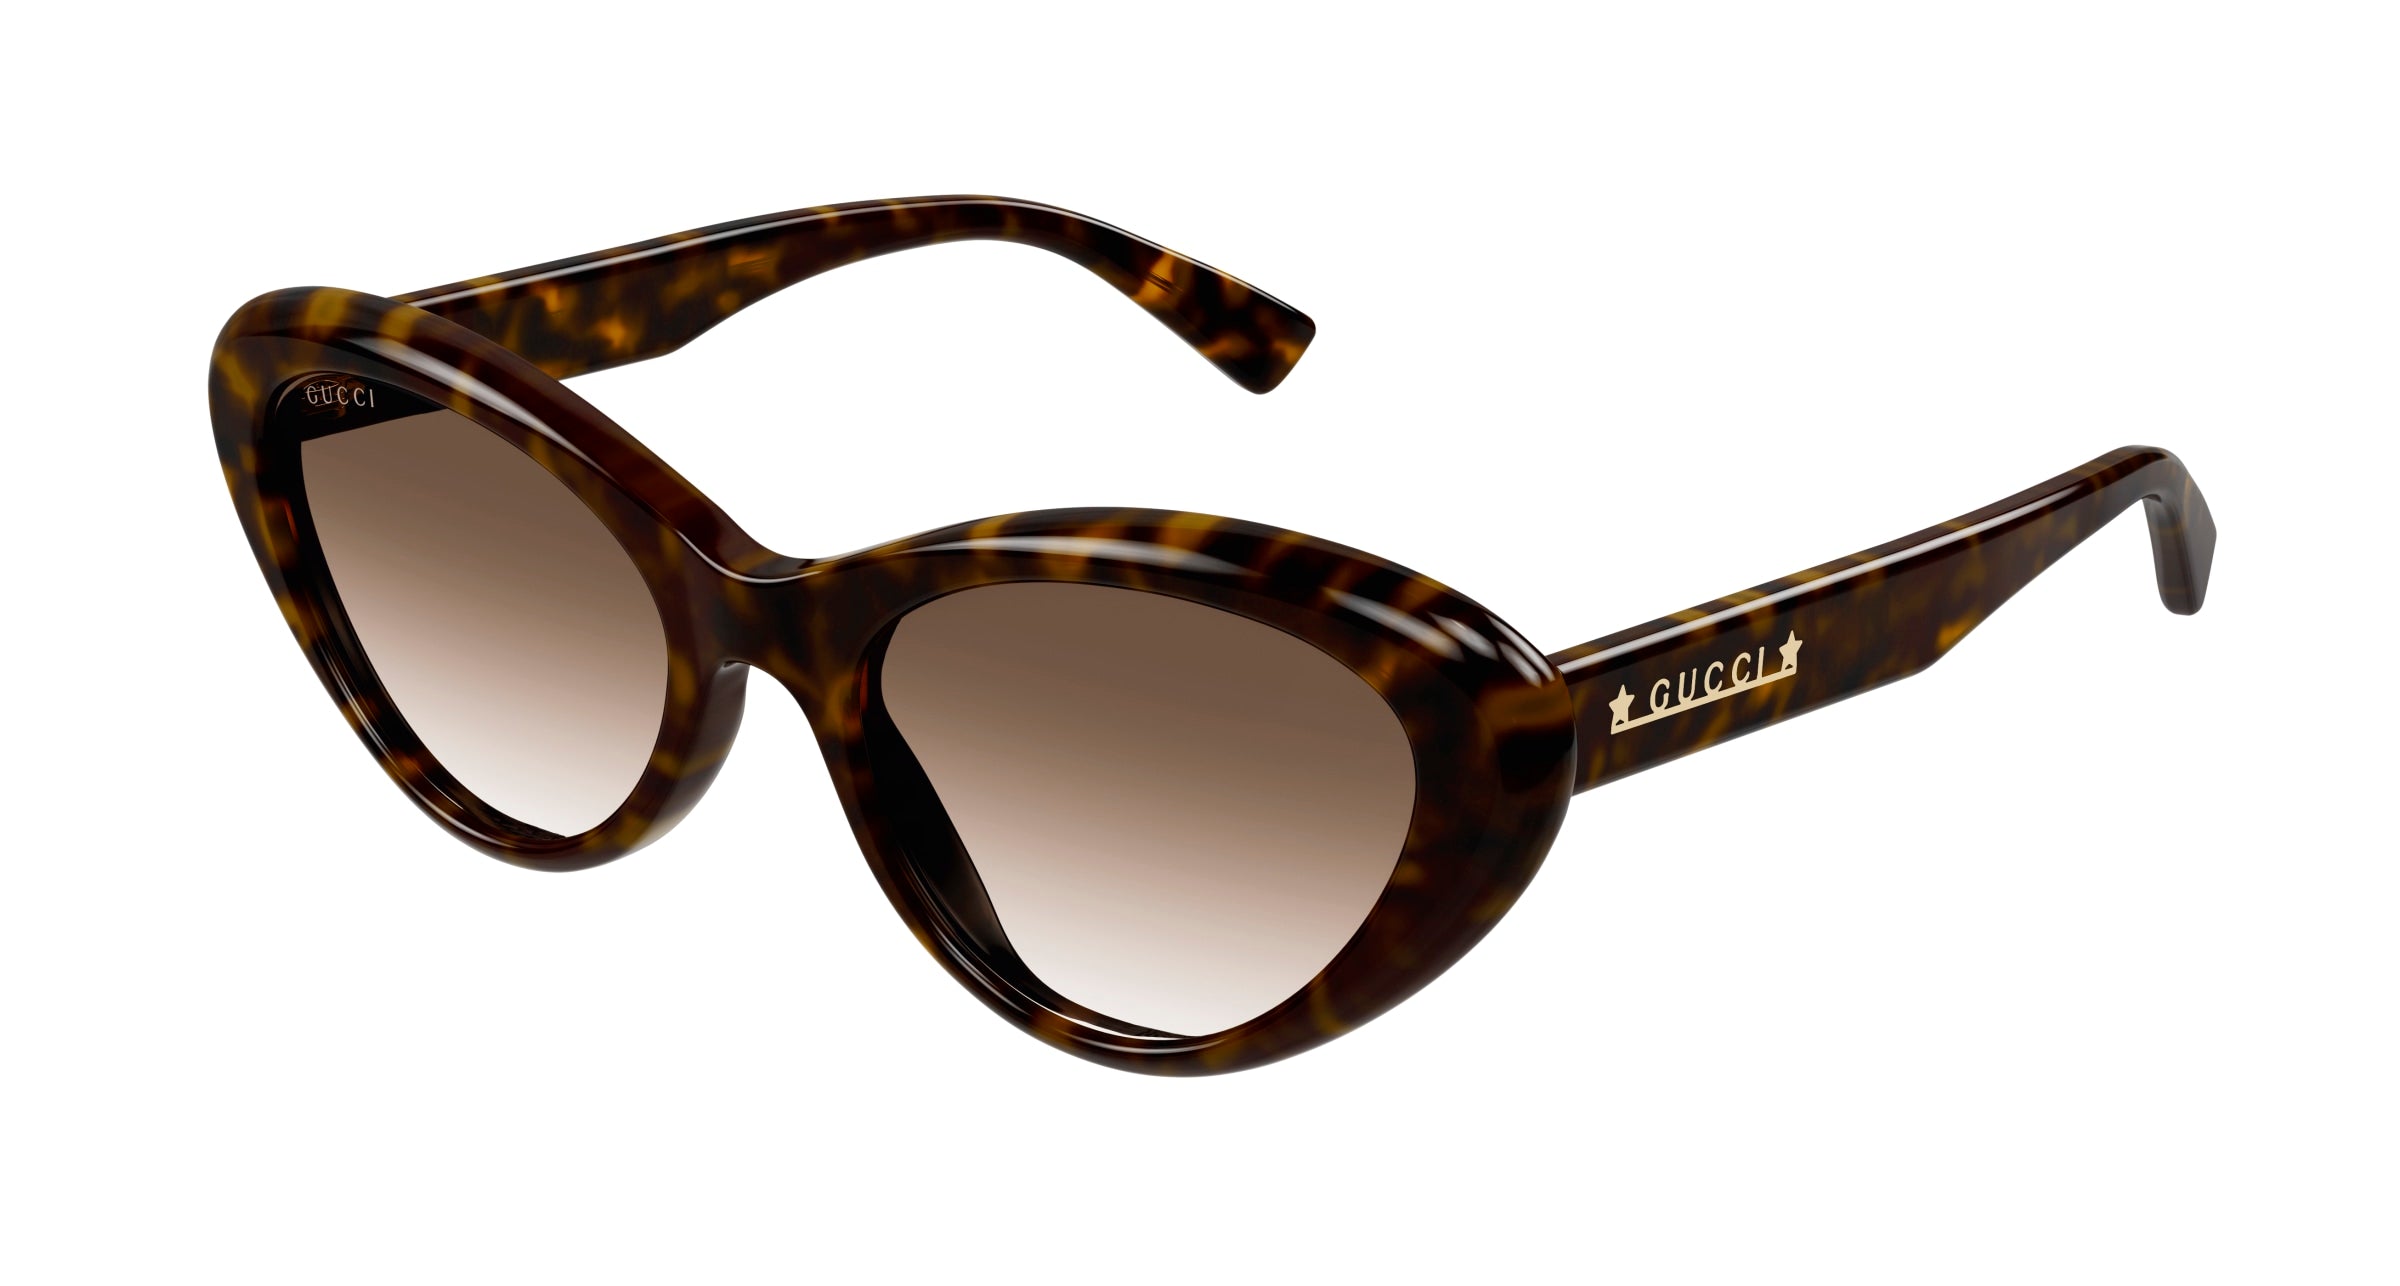 Gucci Women Sunglasses GG1170S-002 Size 54